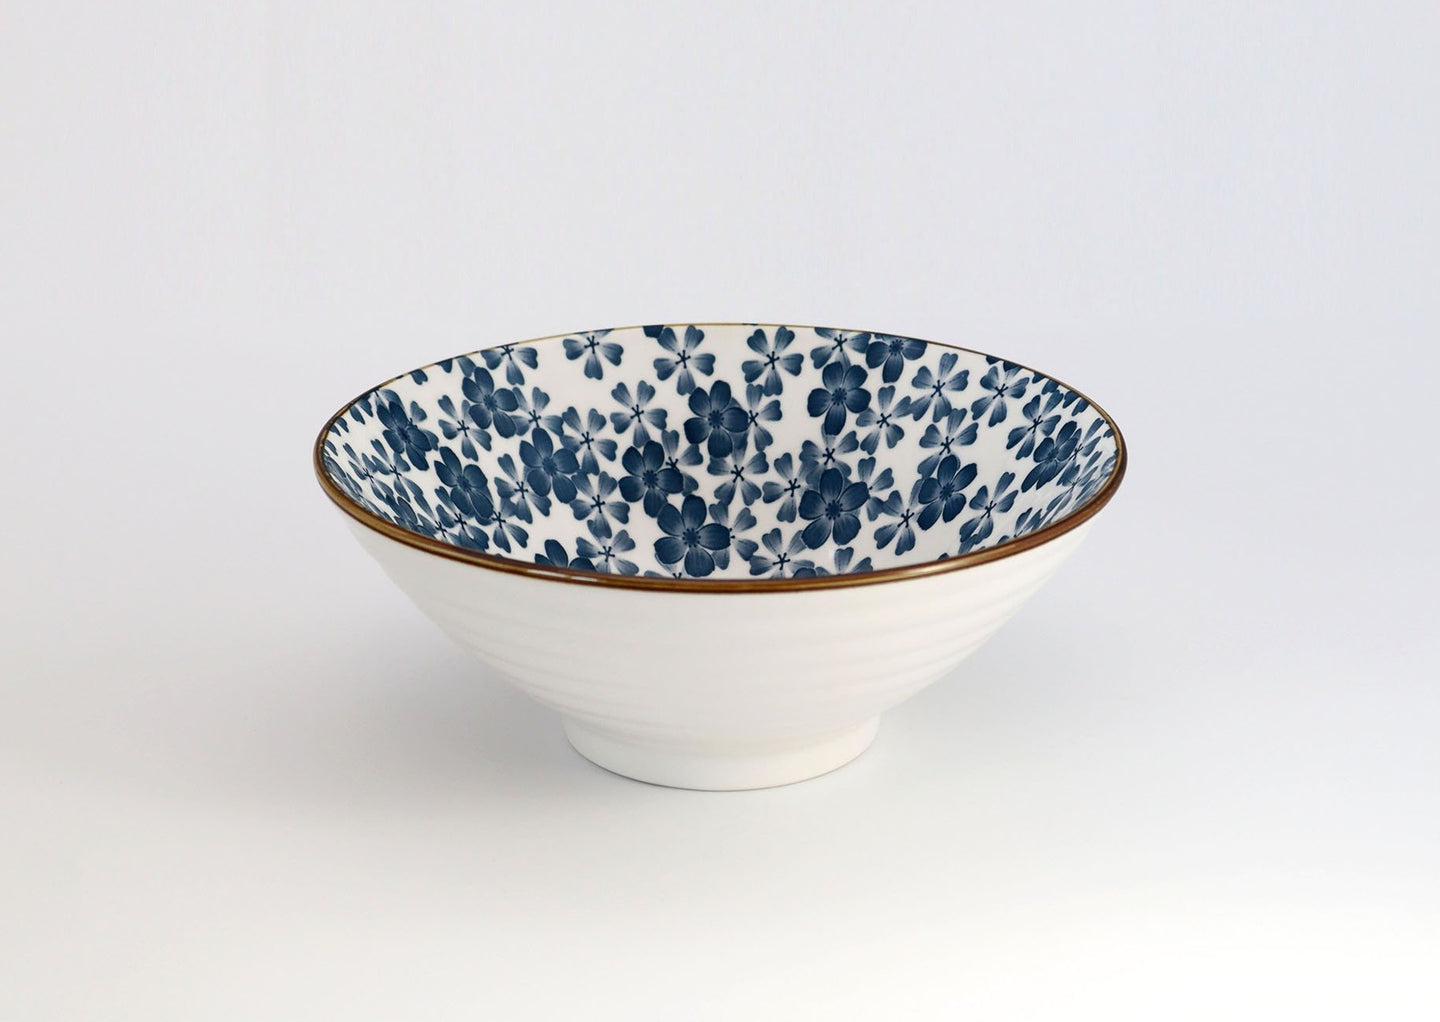 Ceramic Japanese ramen bowl | Traditional Japanese Sakura Inspired Pattern